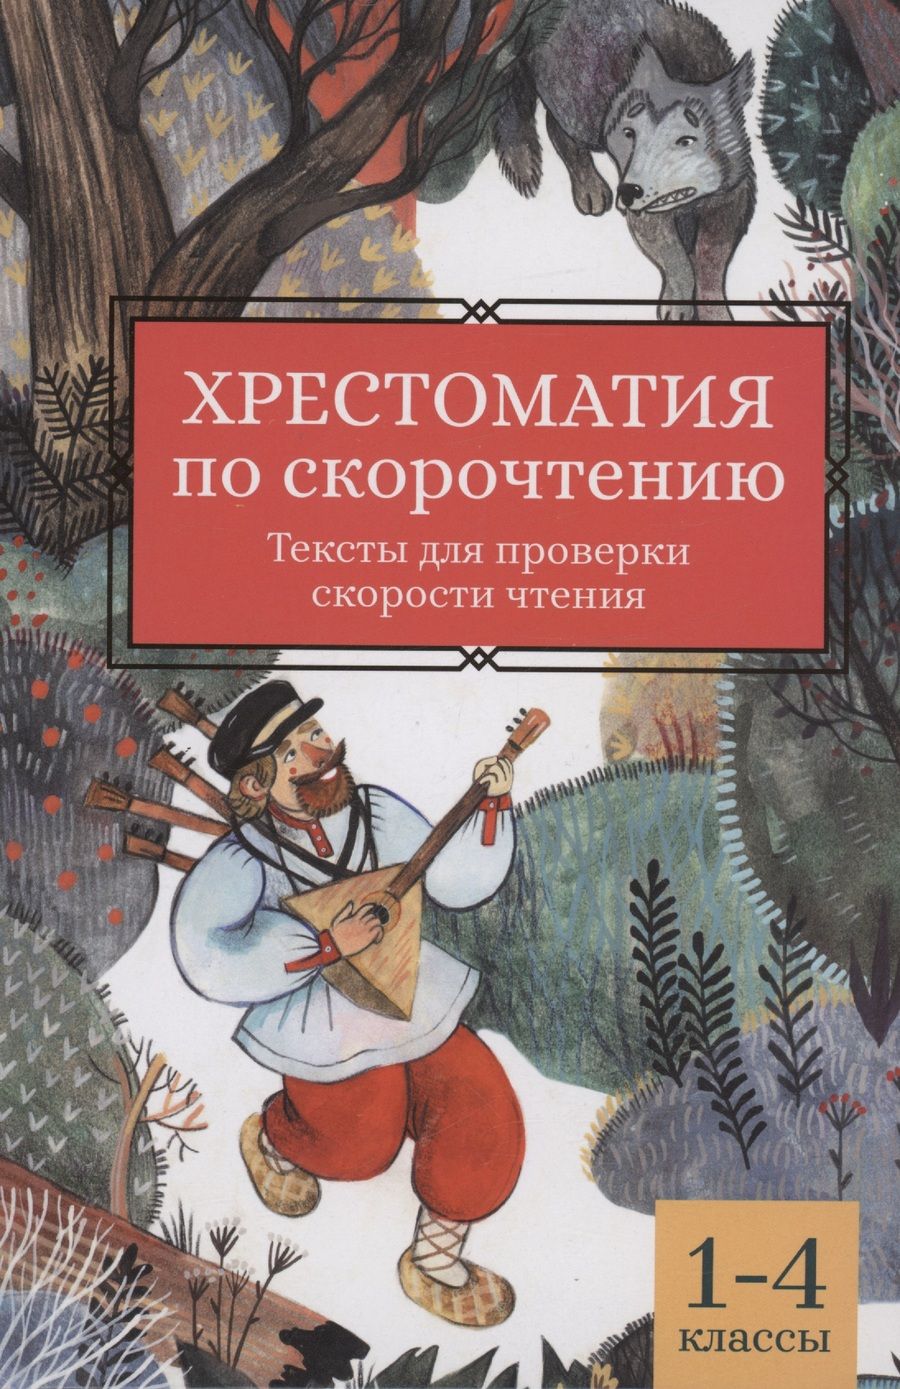 Обложка книги "Аксаков, Даль, Крылов: Хрестоматия по скорочтению. 1-4 классы. Тексты для проверки скорости чтения"